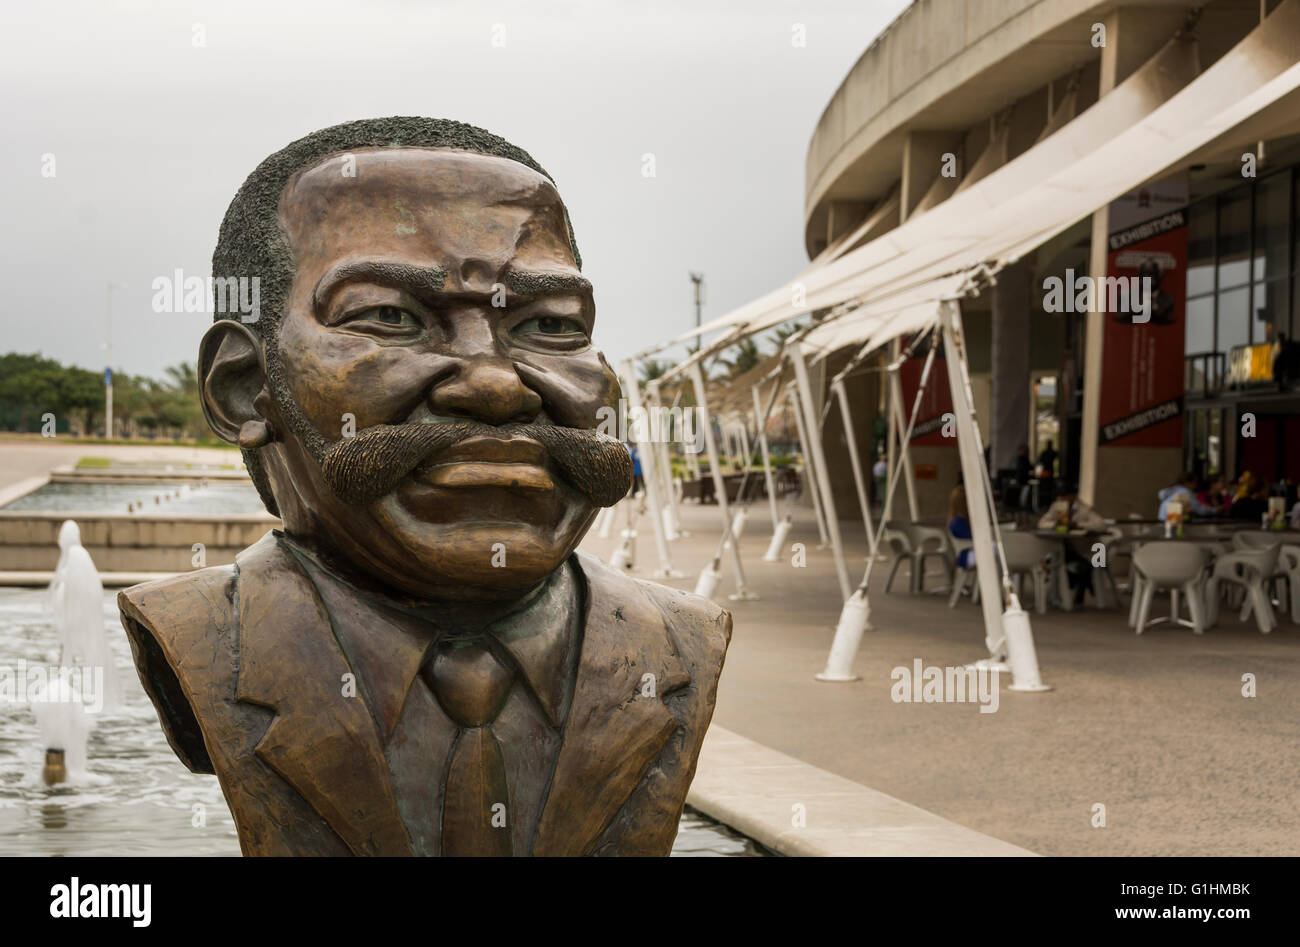 Kopf-Bronzestatue des Moses Mabhida außerhalb des Stadions in Durban, KwaZulu Natal, Südafrika nach ihm benannt Stockfoto